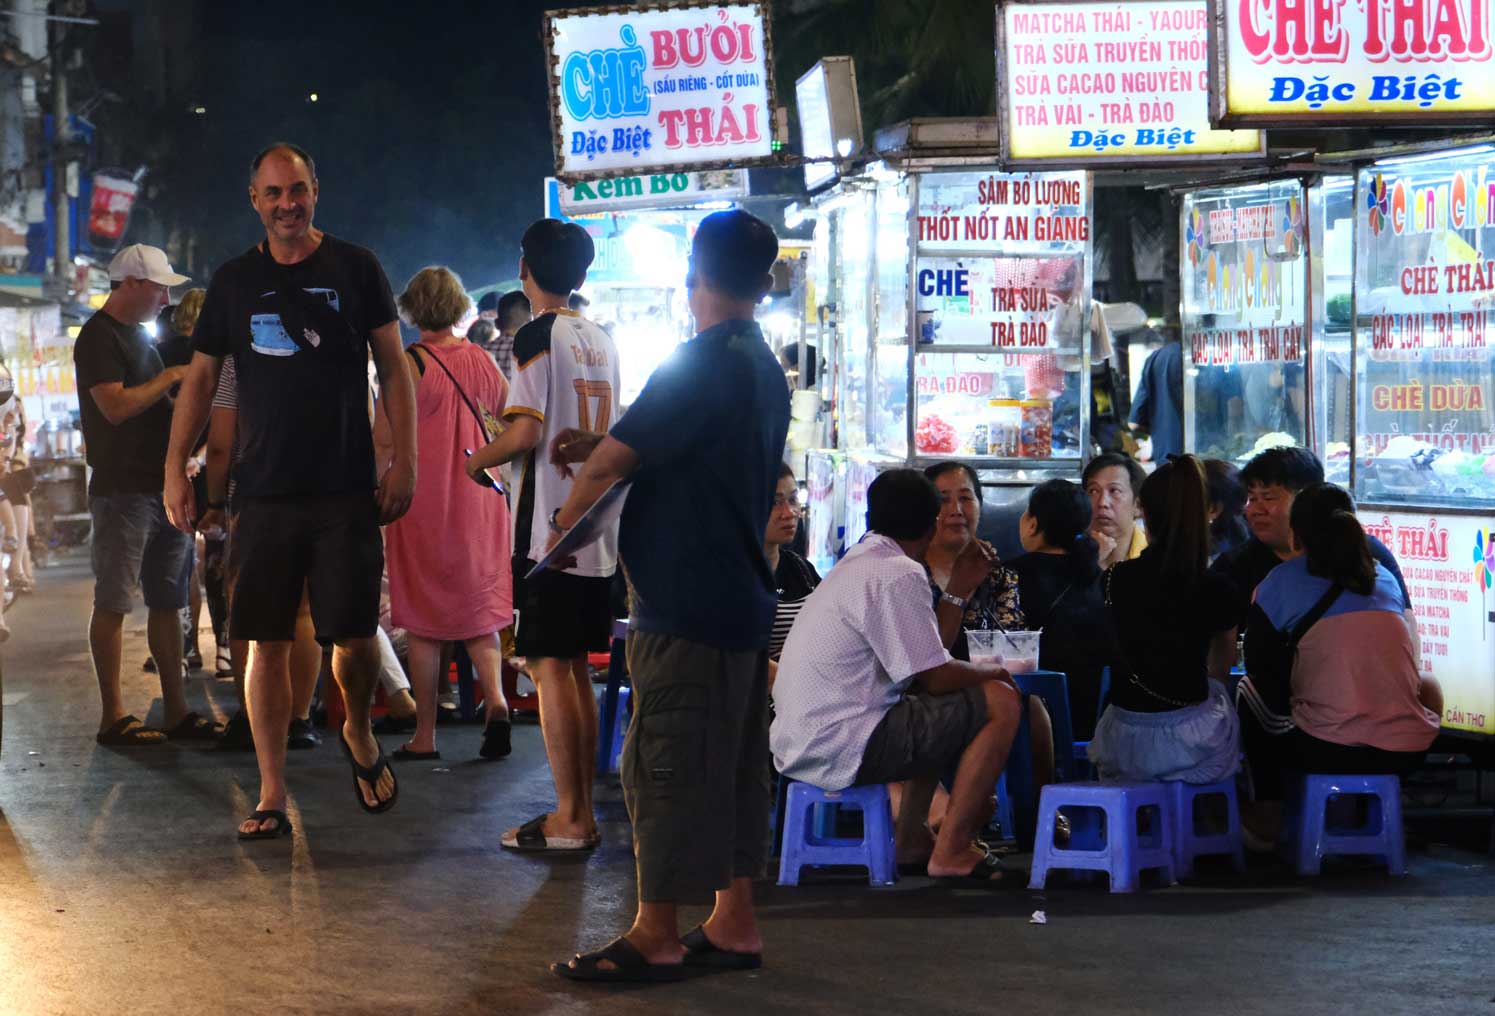 “Dạo một vòng phố đi bộ Ninh Kiều và tuyến phố ẩm thực hồ Búng Xáng khi về đêm, tôi thấy không khí mua sắm, vui chơi của người dân, du khách khá nhộn nhịp”, anh Bảo nói.